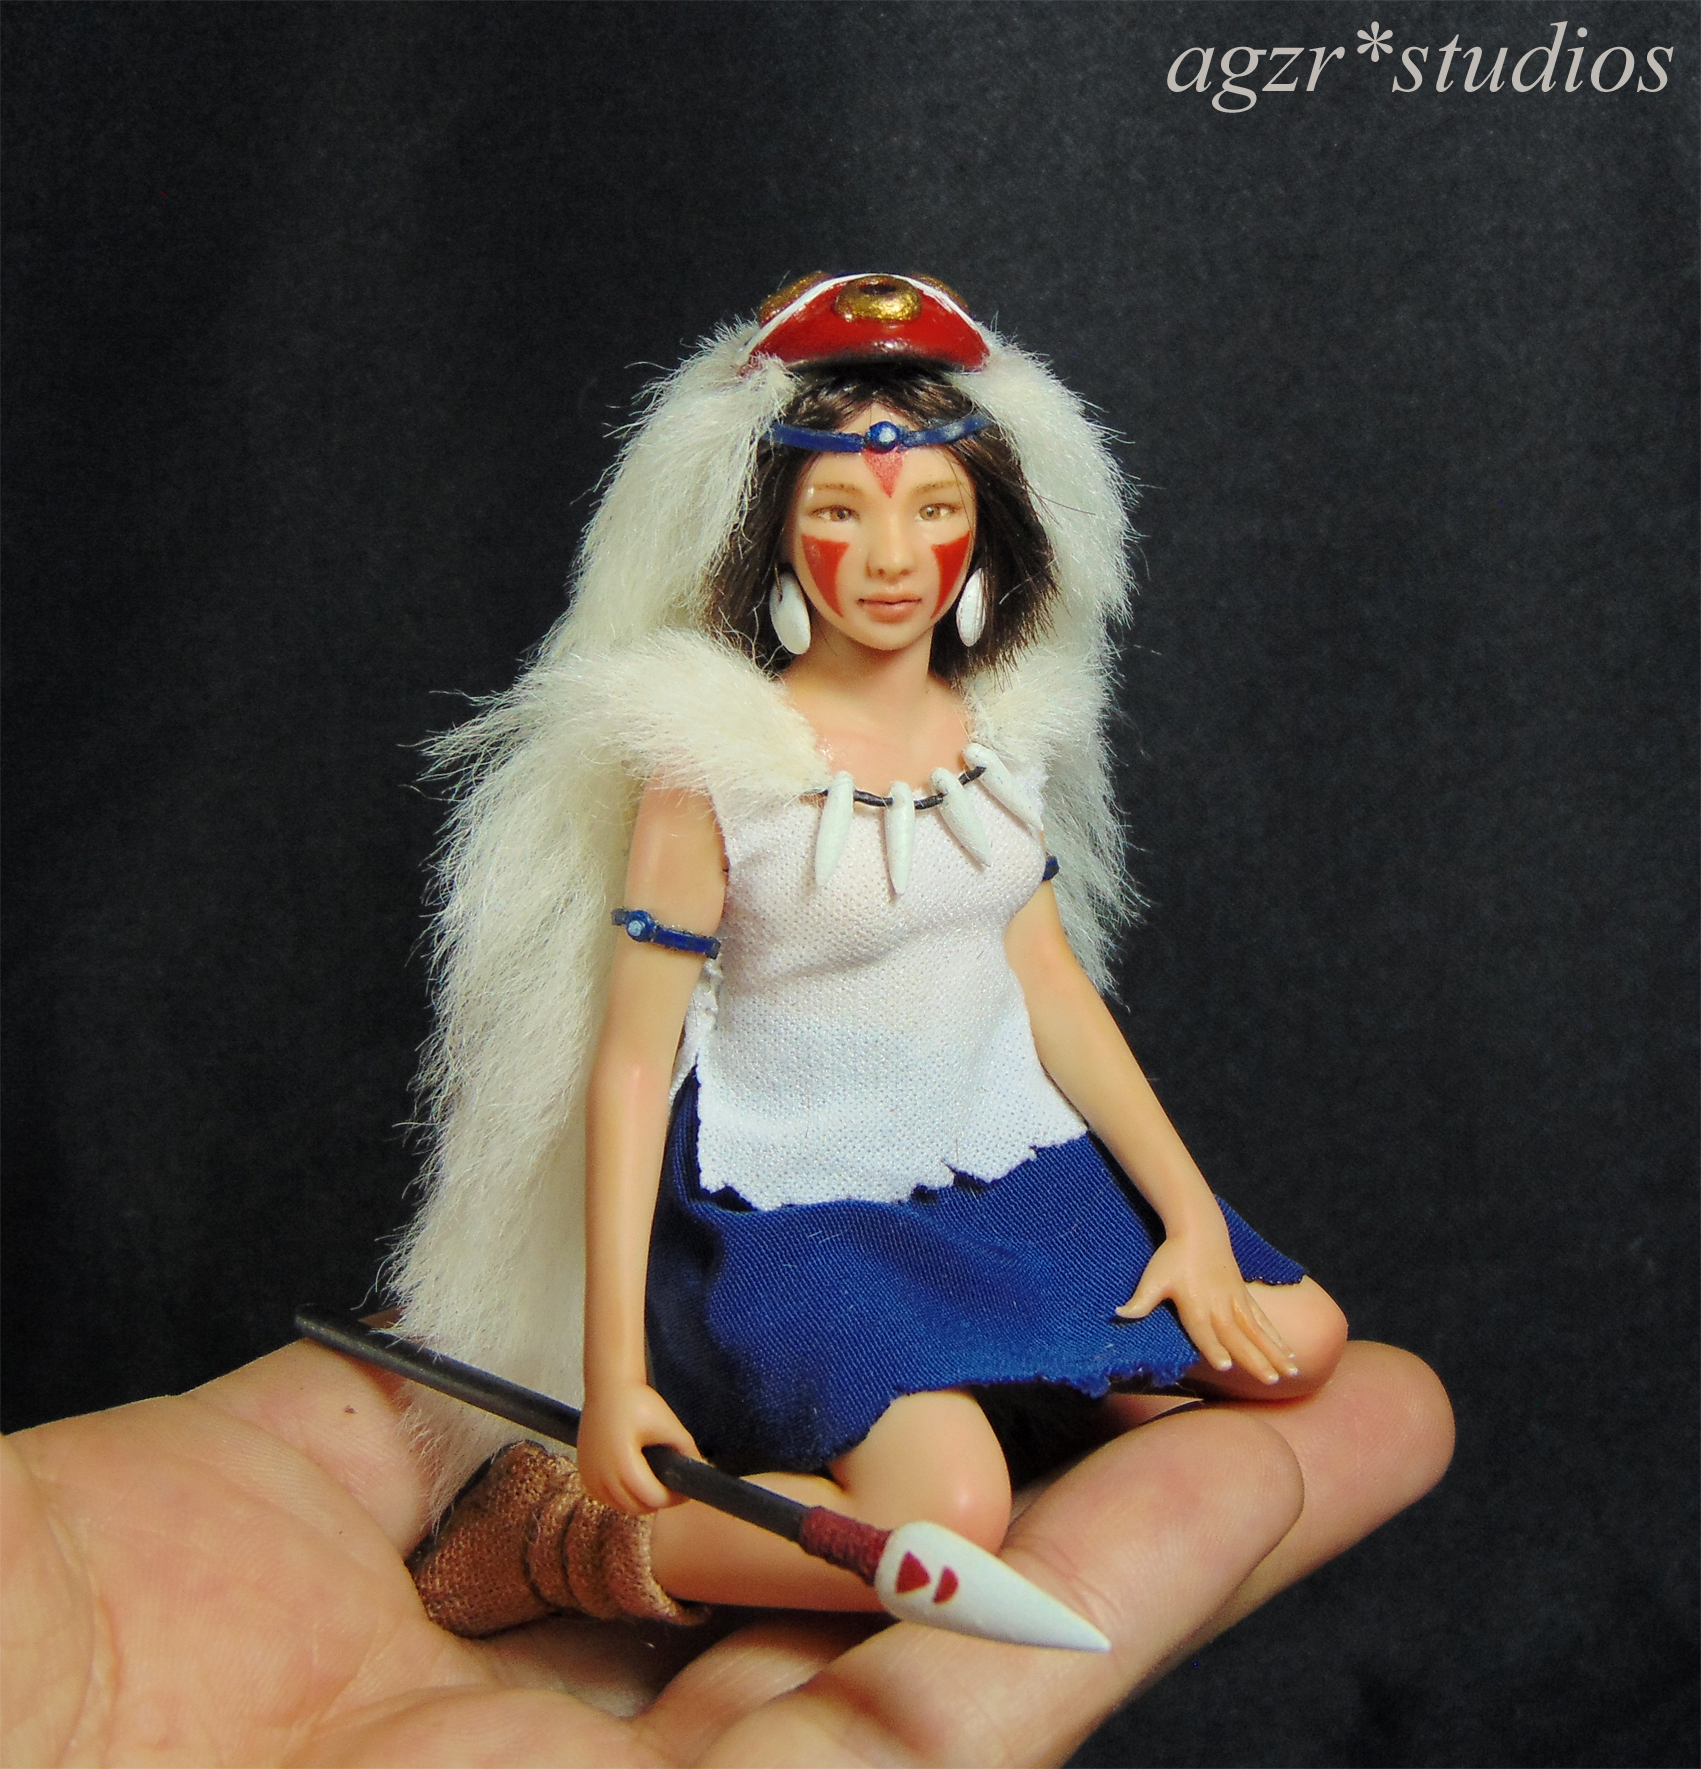 Princess Mononoke Miniature Doll Sculpture Art 1:12 scale Dollhouse Diorama agzr studios